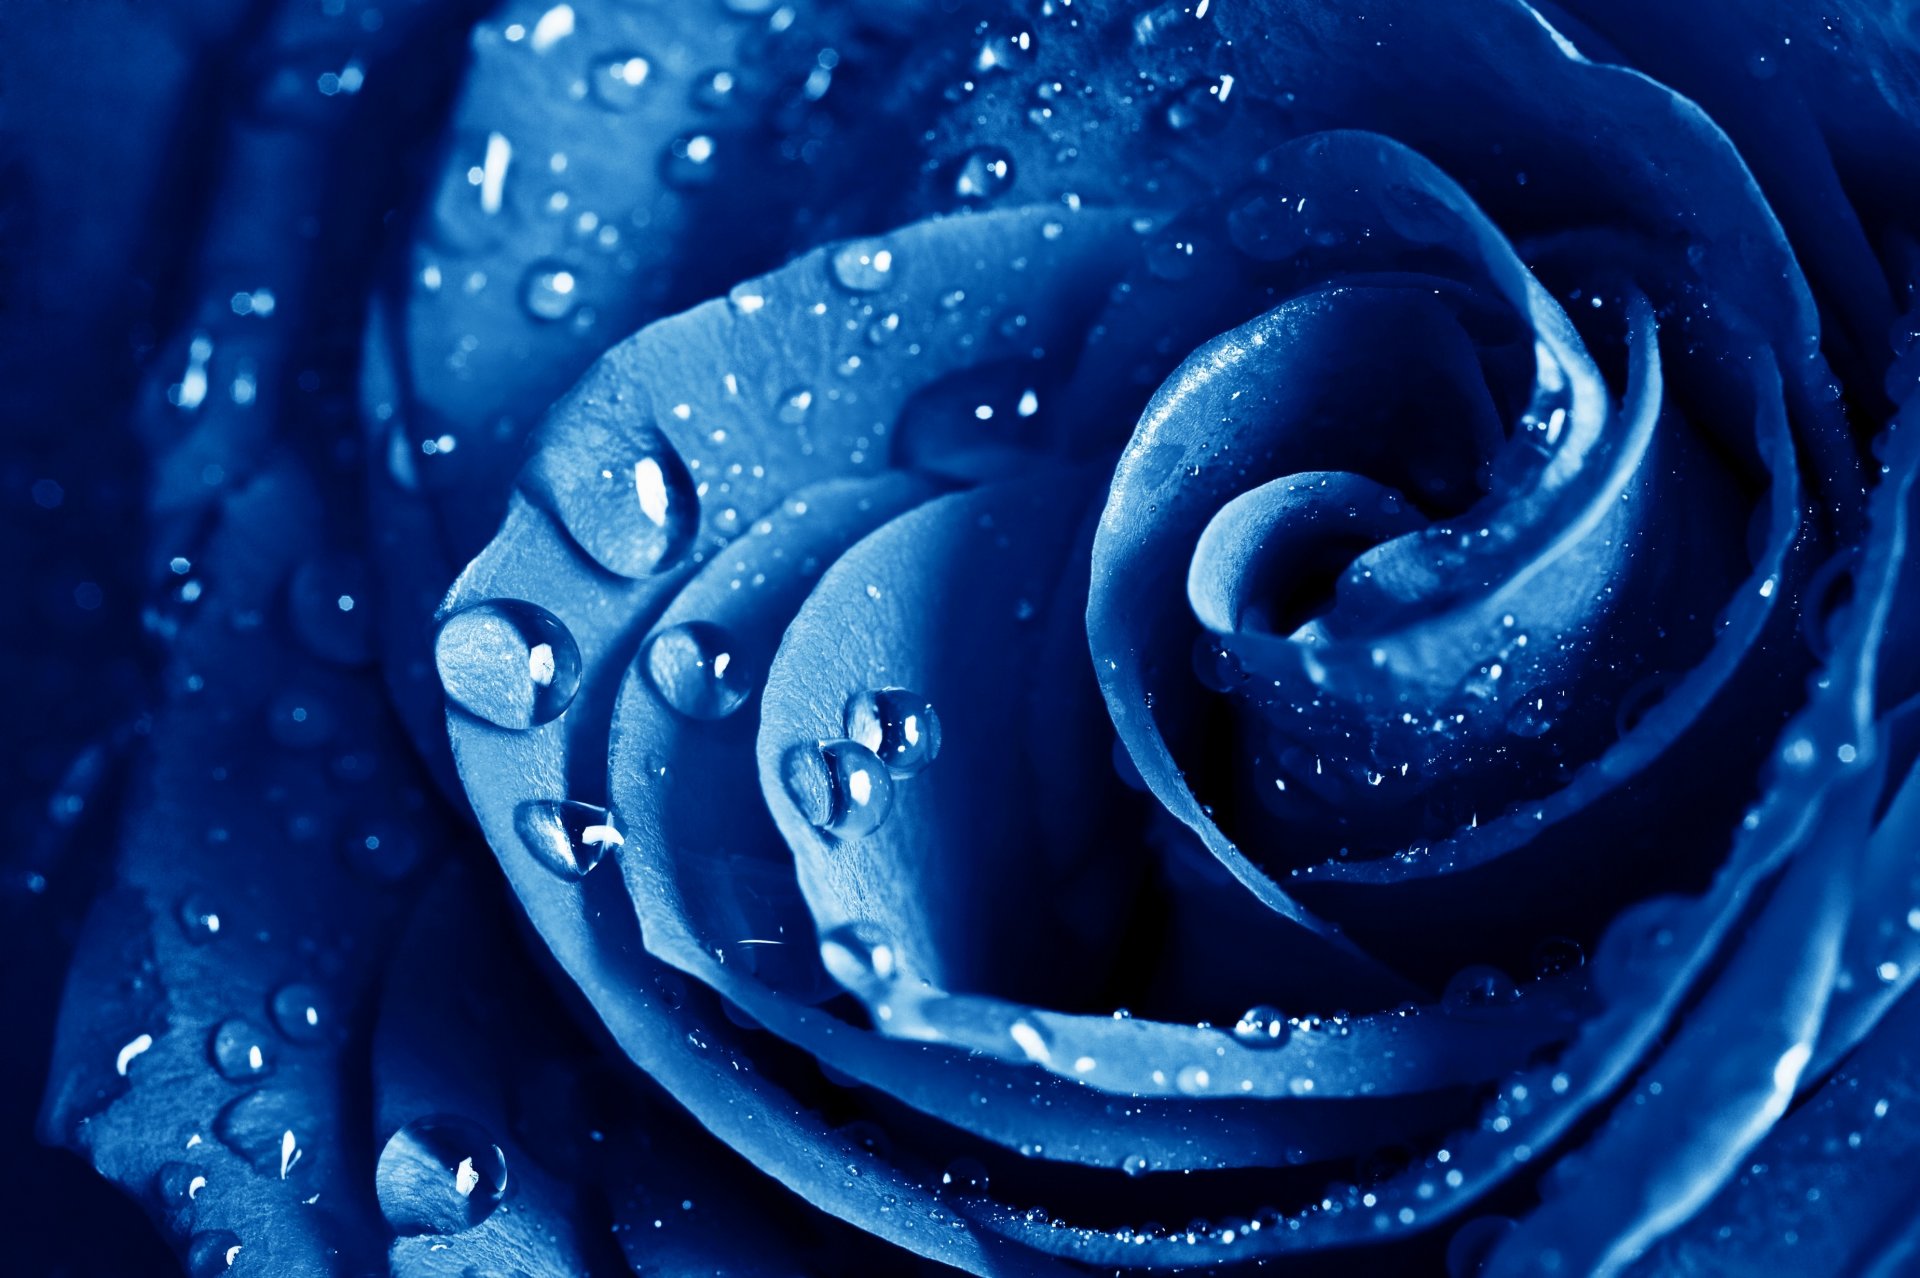 Flowers Droplets – One, dew drops HD wallpaper | Pxfuel